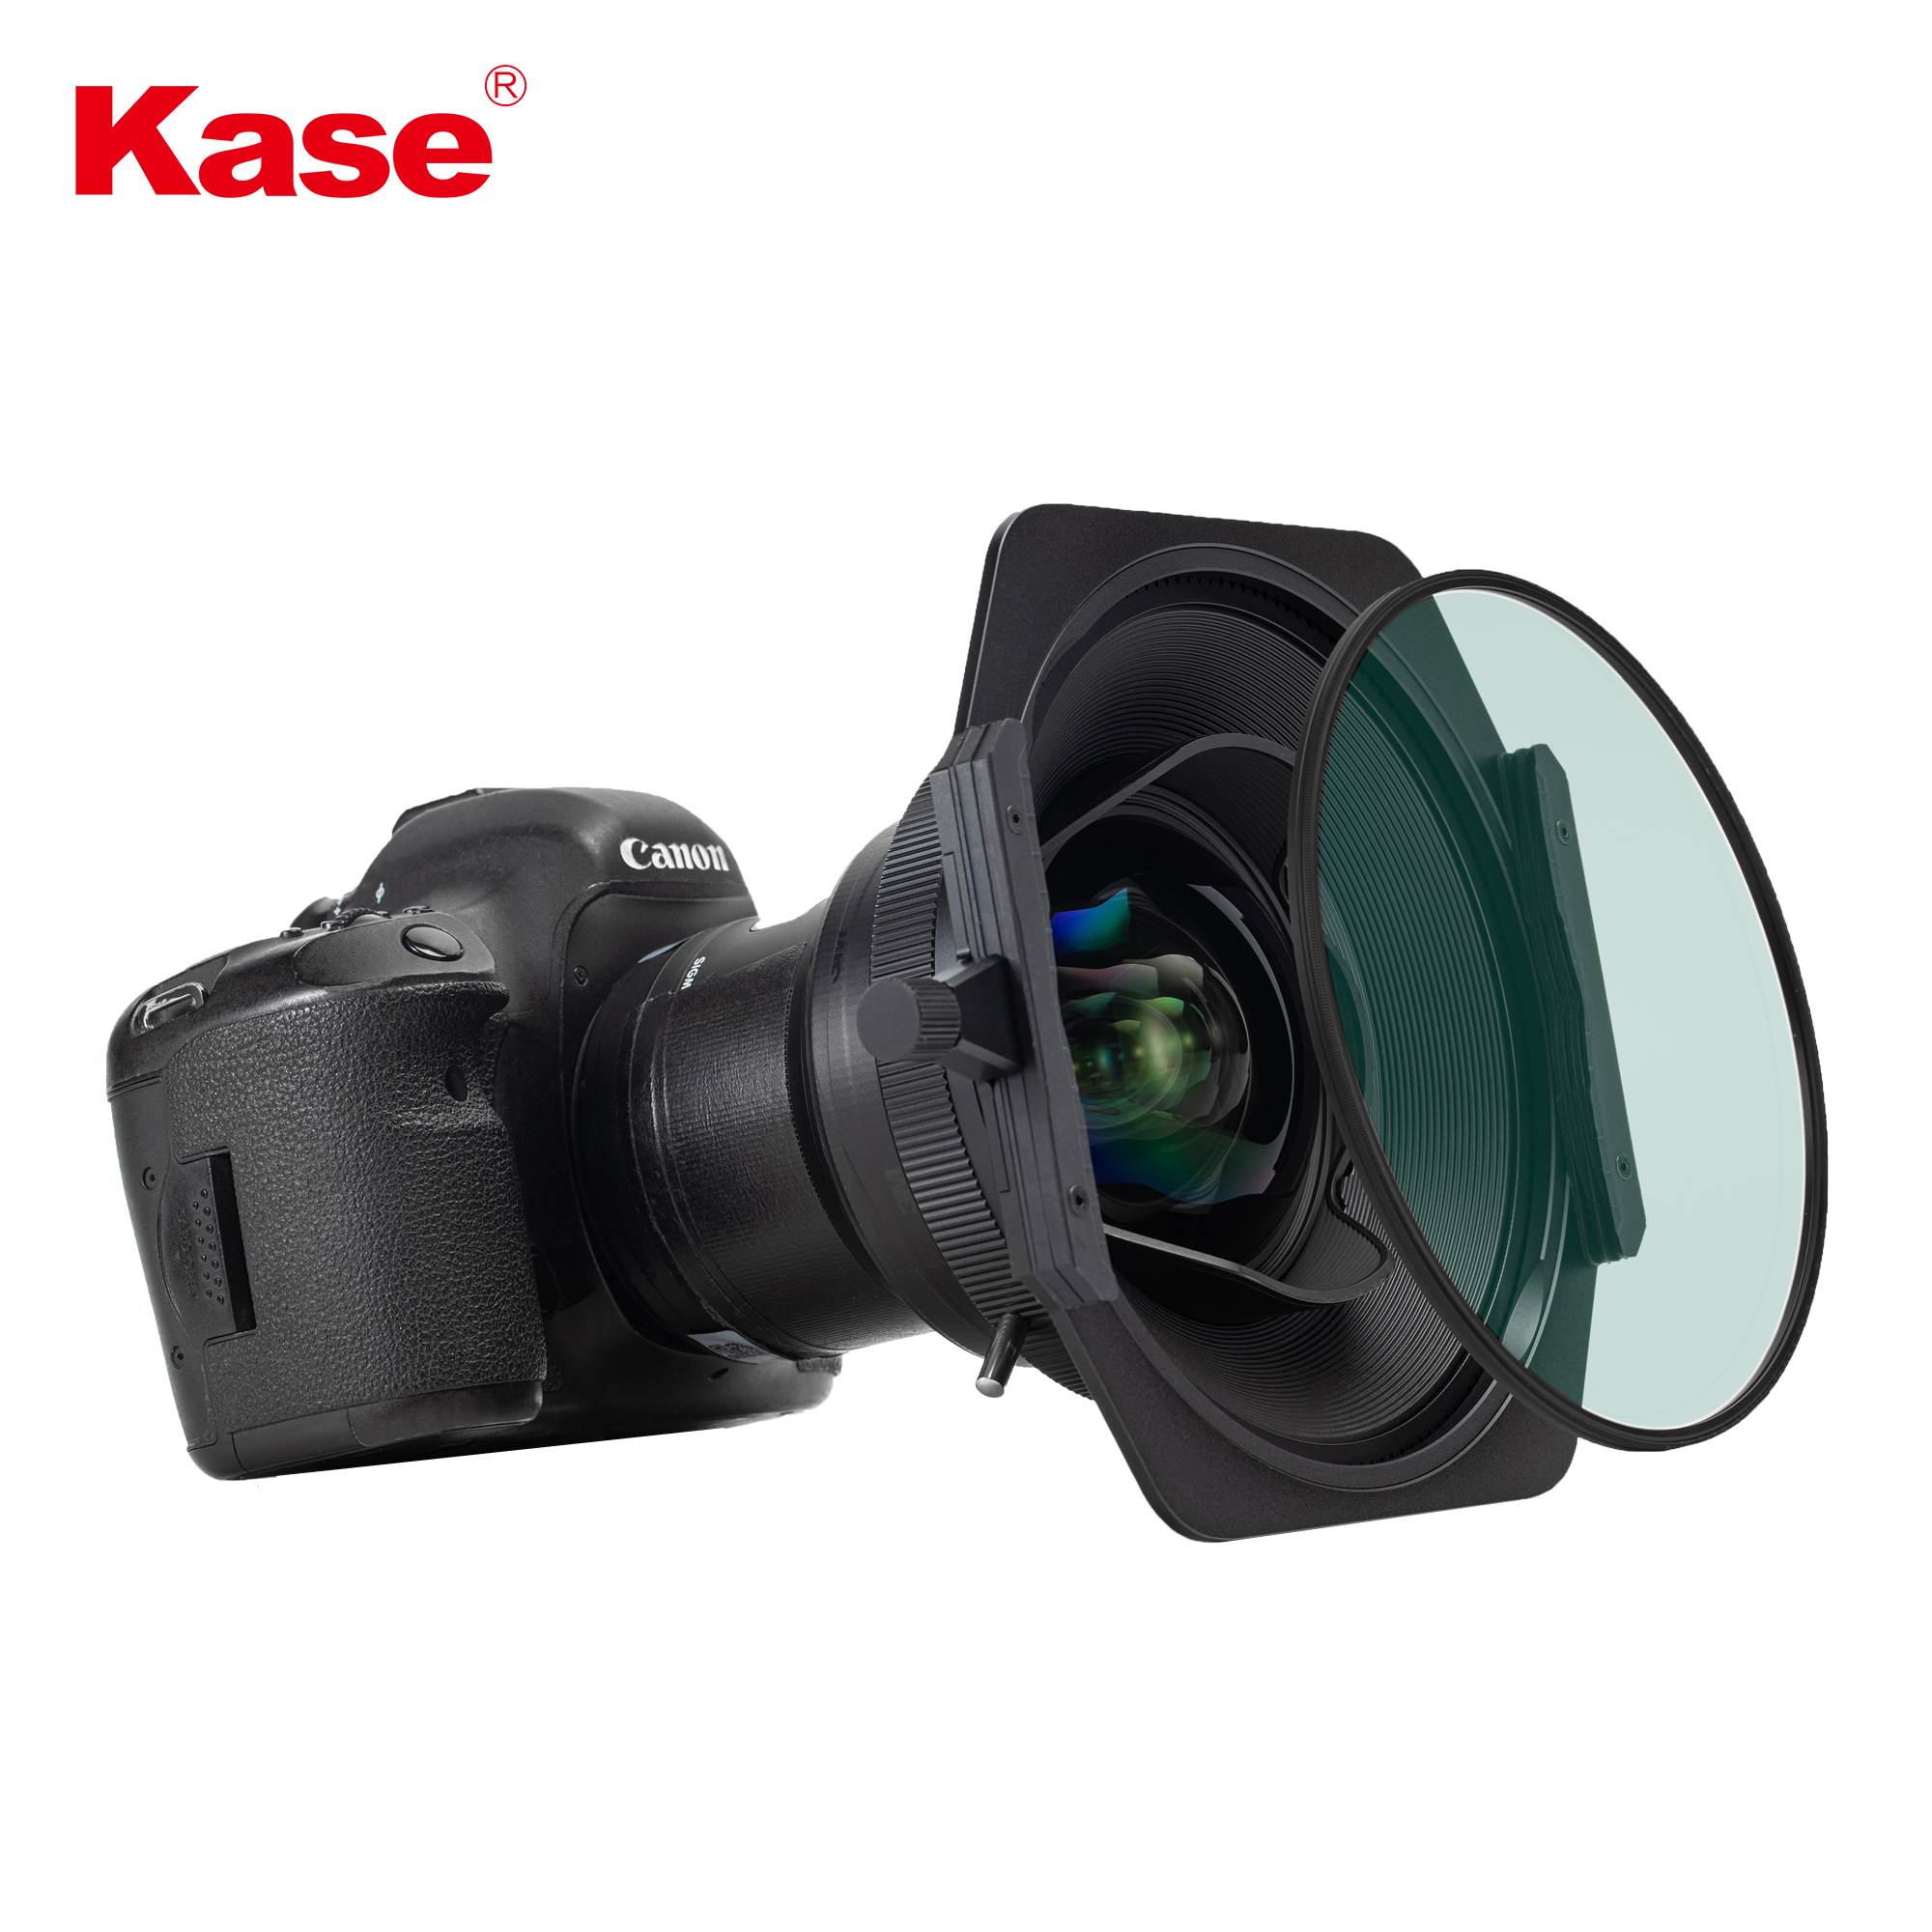 Kase K150P Filter Holder for Tamron 15-30mm Lens